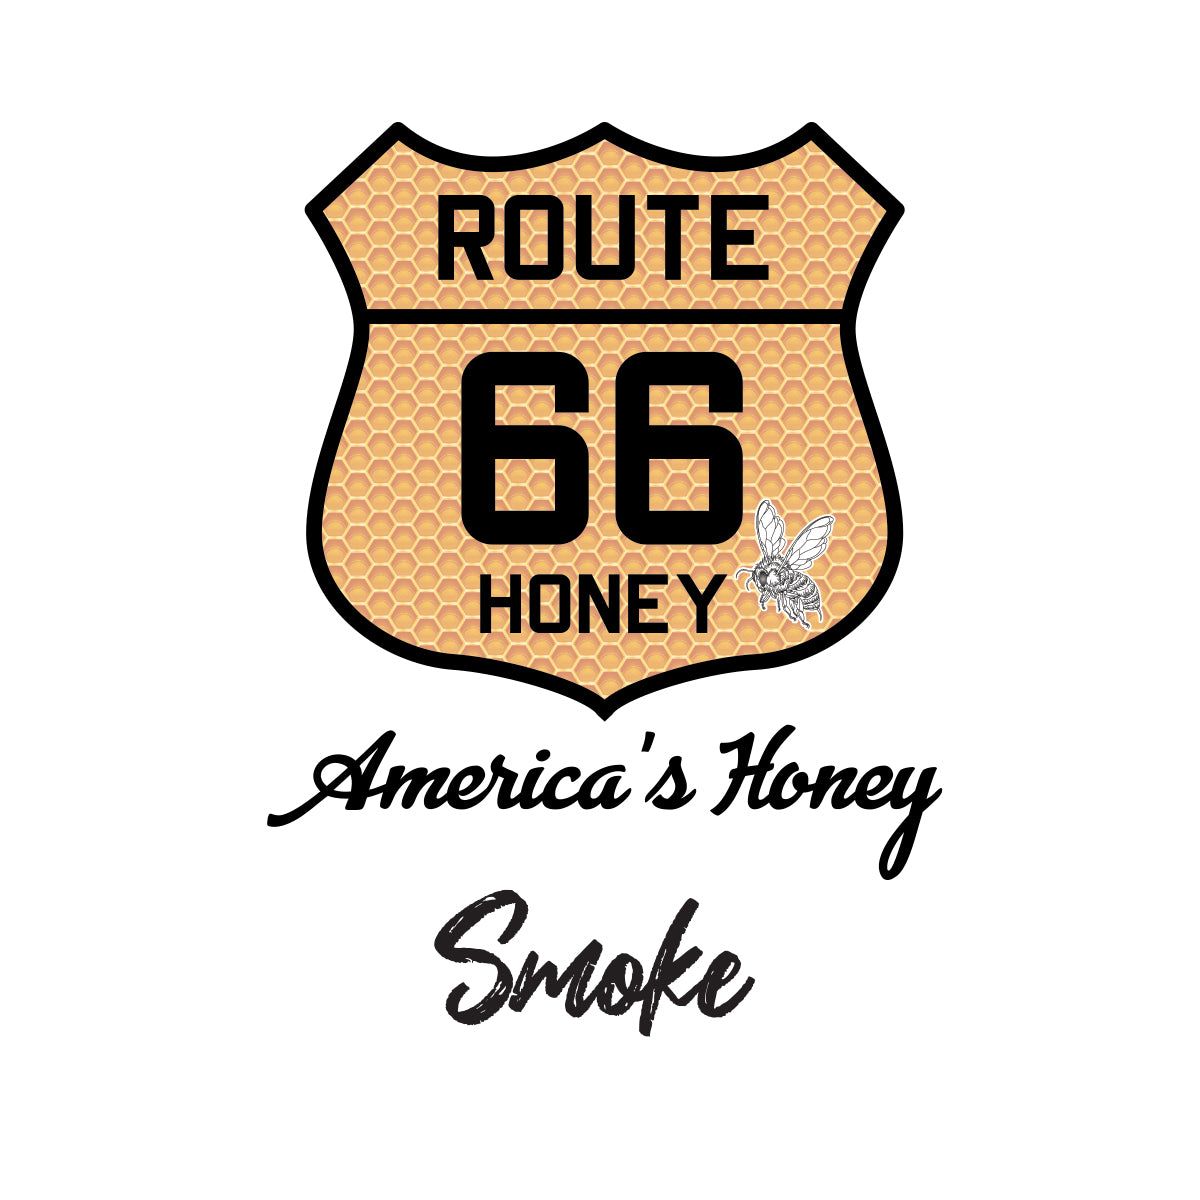 Smoked Honey